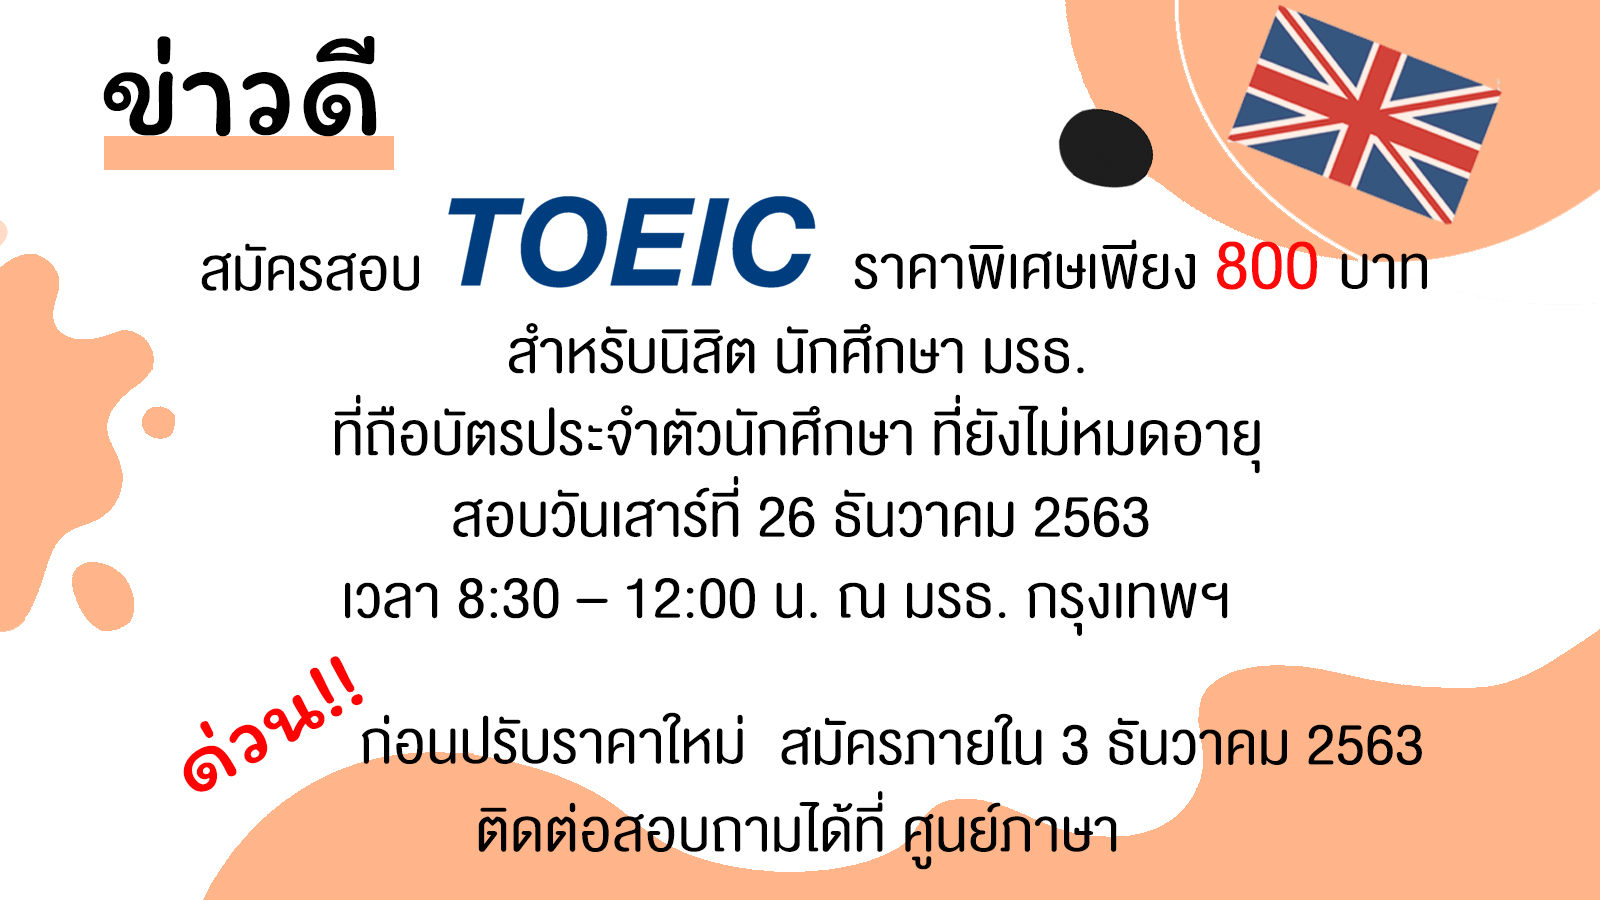 ศูนย์ภาษาจัดสอบ TOEIC สำหรับนักศึกษา มหาวิทยาลัยราชภัฏธนบุรี